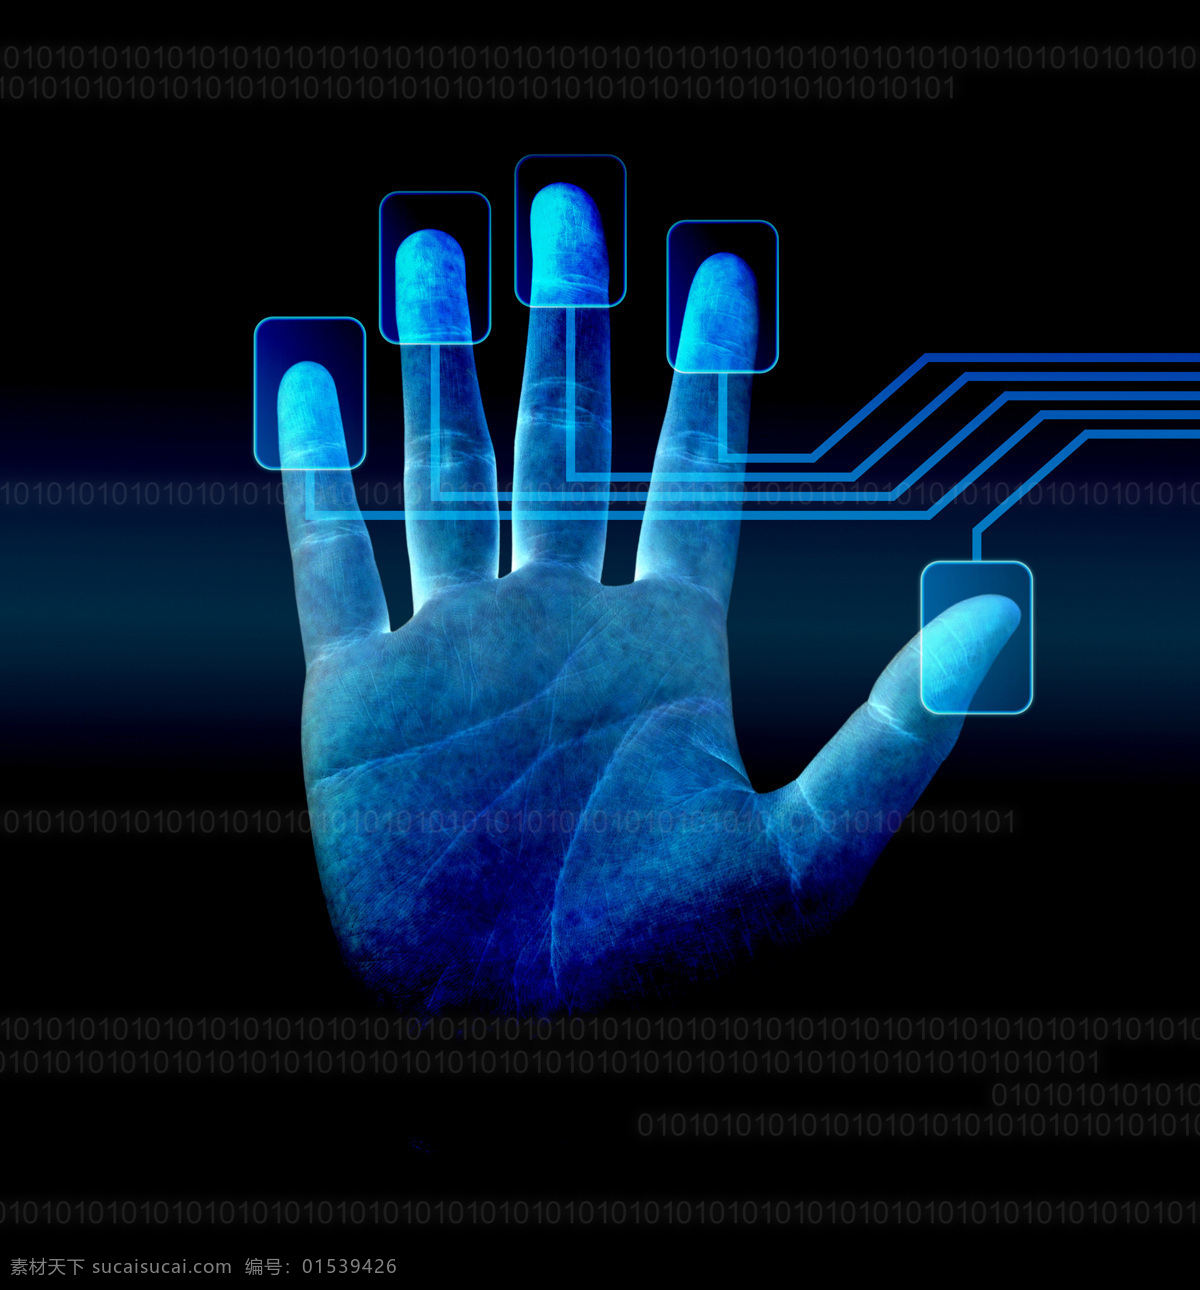 指纹识别 系统 指纹识别系统 手纹指纹 手纹 指纹 手印 指纹鉴别 读取 扫描 高端 科技 其他类别 现代科技